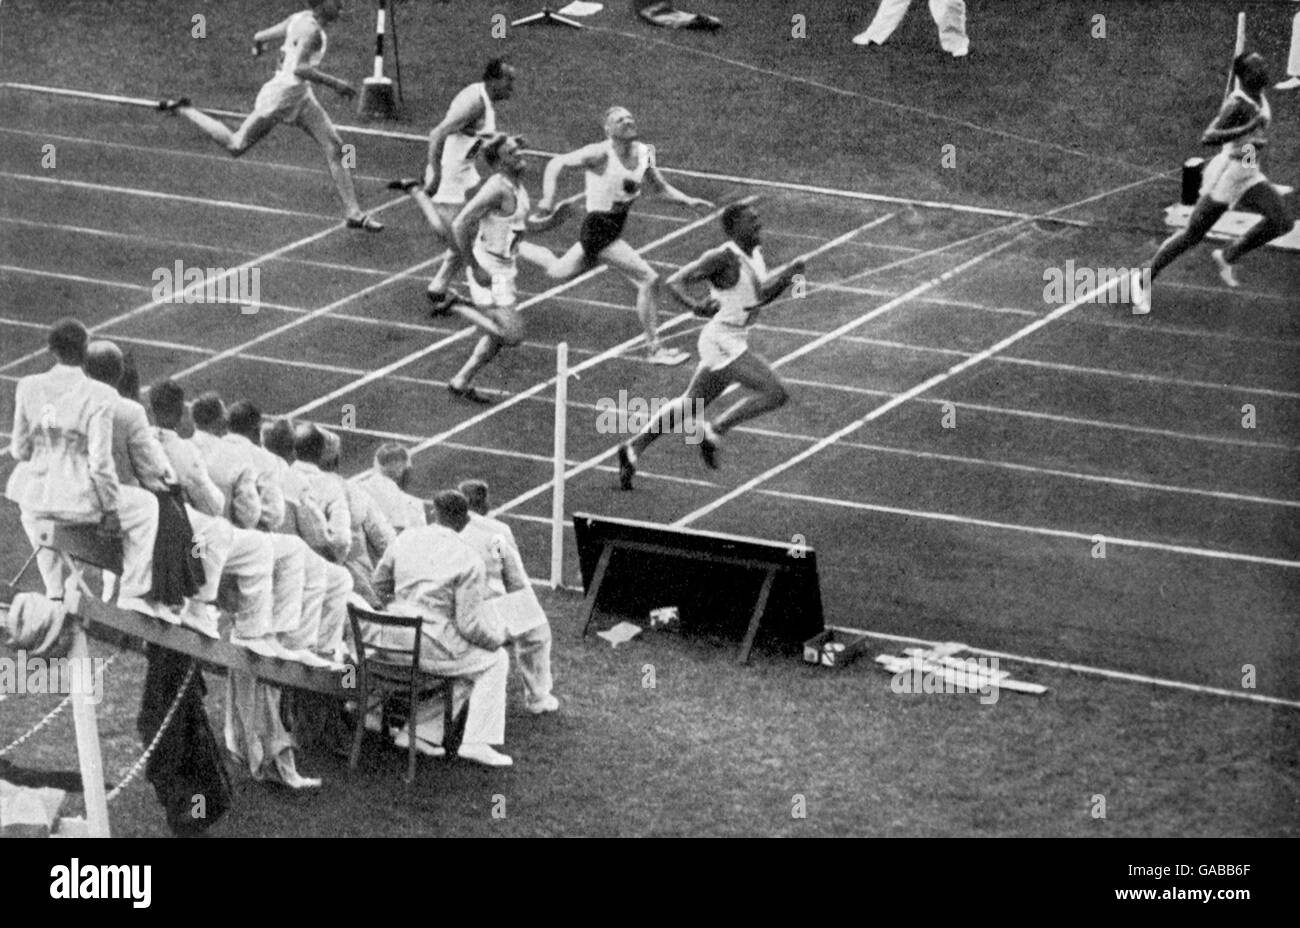 (R-L) Jesse Owens des États-Unis brise la bande pour gagner l'or alors que son coéquipier Ralph Metcalfe rentre à la maison pour gagner l'argent, et Martinus Osendarp des pays-Bas pour obtenir le bronze Banque D'Images